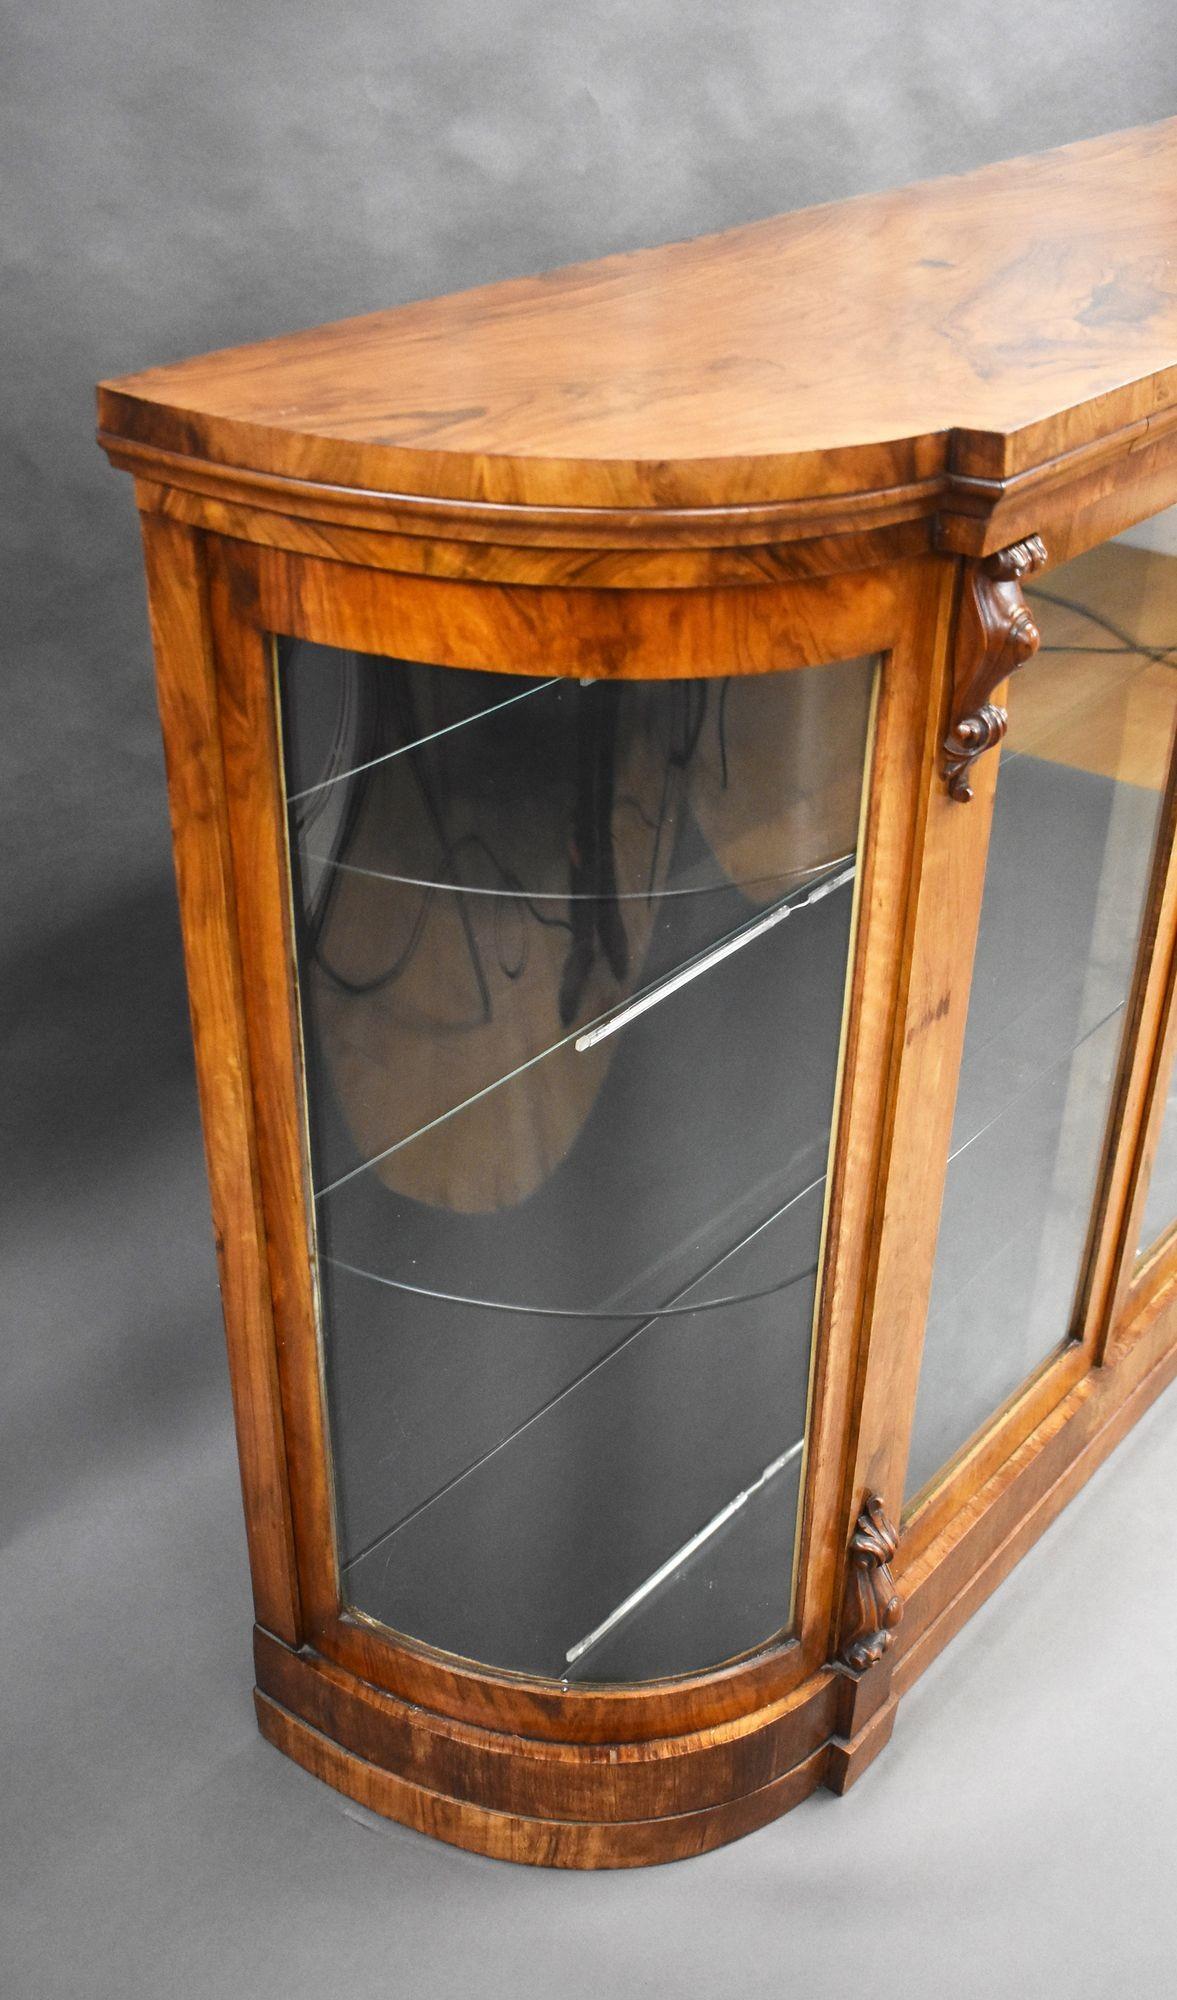 Zum Verkauf steht ein viktorianisches Kredenzmöbel aus Wurzelnussholz mit Glastüren und gewölbten Enden, das auf einem Sockel steht. Dieses Stück ist noch in sehr gutem Zustand.

Breite: 137cm Tiefe: 41cm Höhe: 103cm